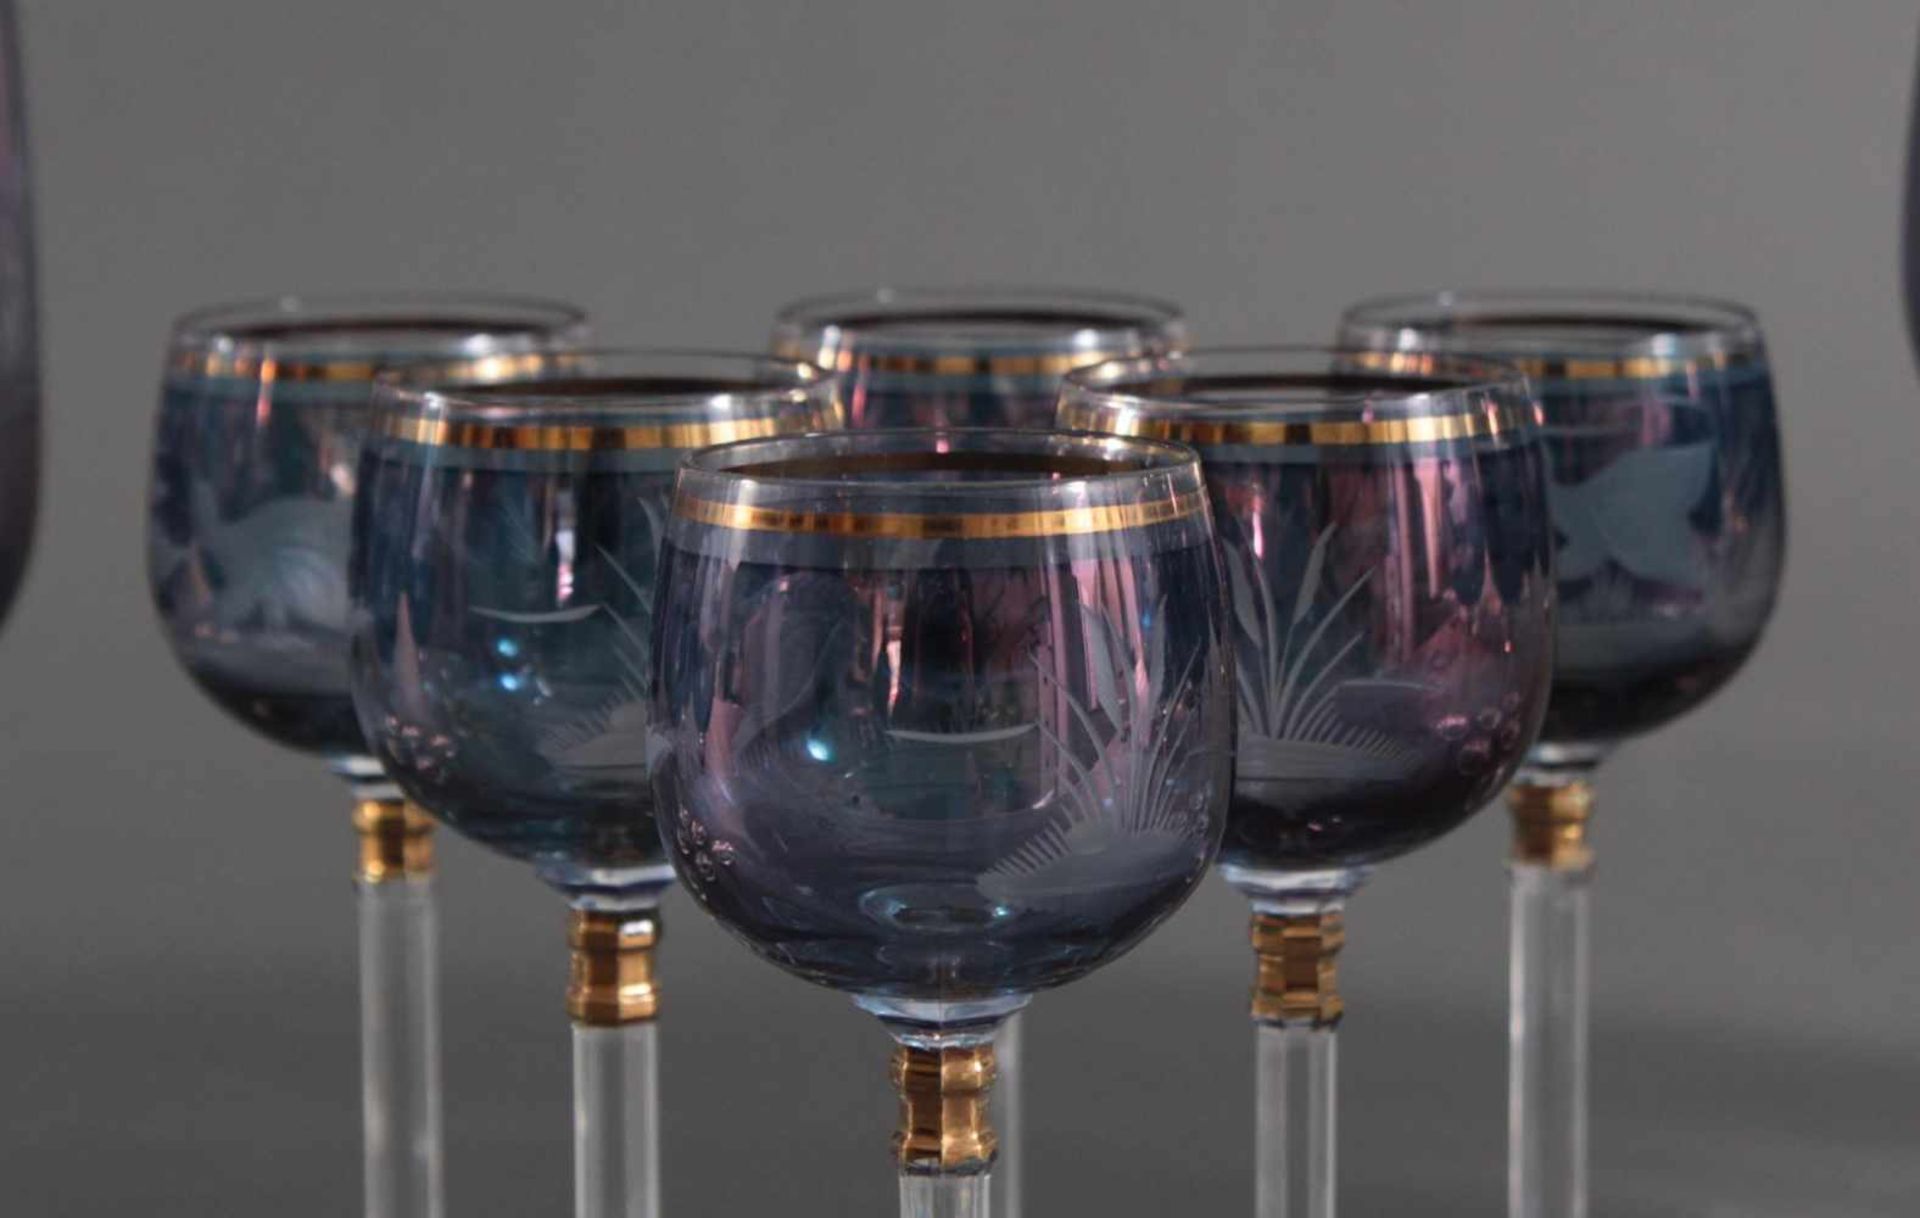 Glasset für 6 PersonenKristall, farbloses Glas blau überfangen, gold staffiert mit - Bild 3 aus 5